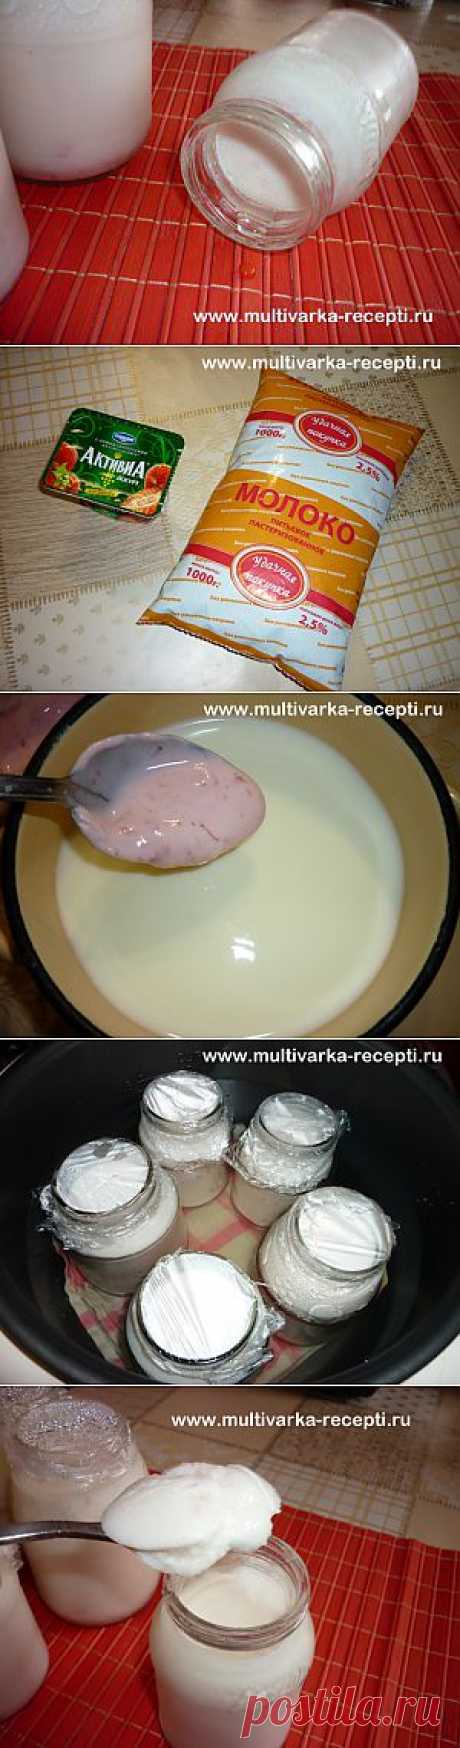 Рецепт йогурта в мультиварке панасоник |